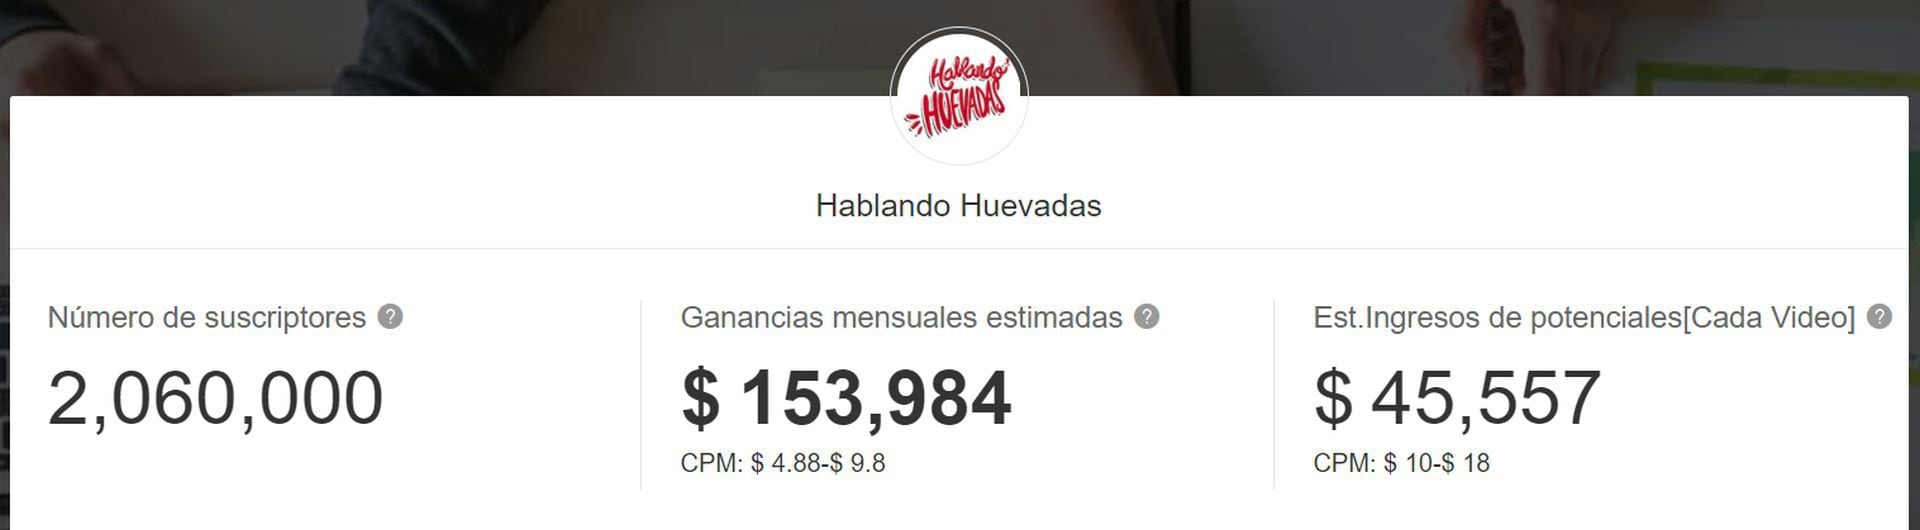 Hablando Huevadas bate récord en Perú con sus vistas en YouTube